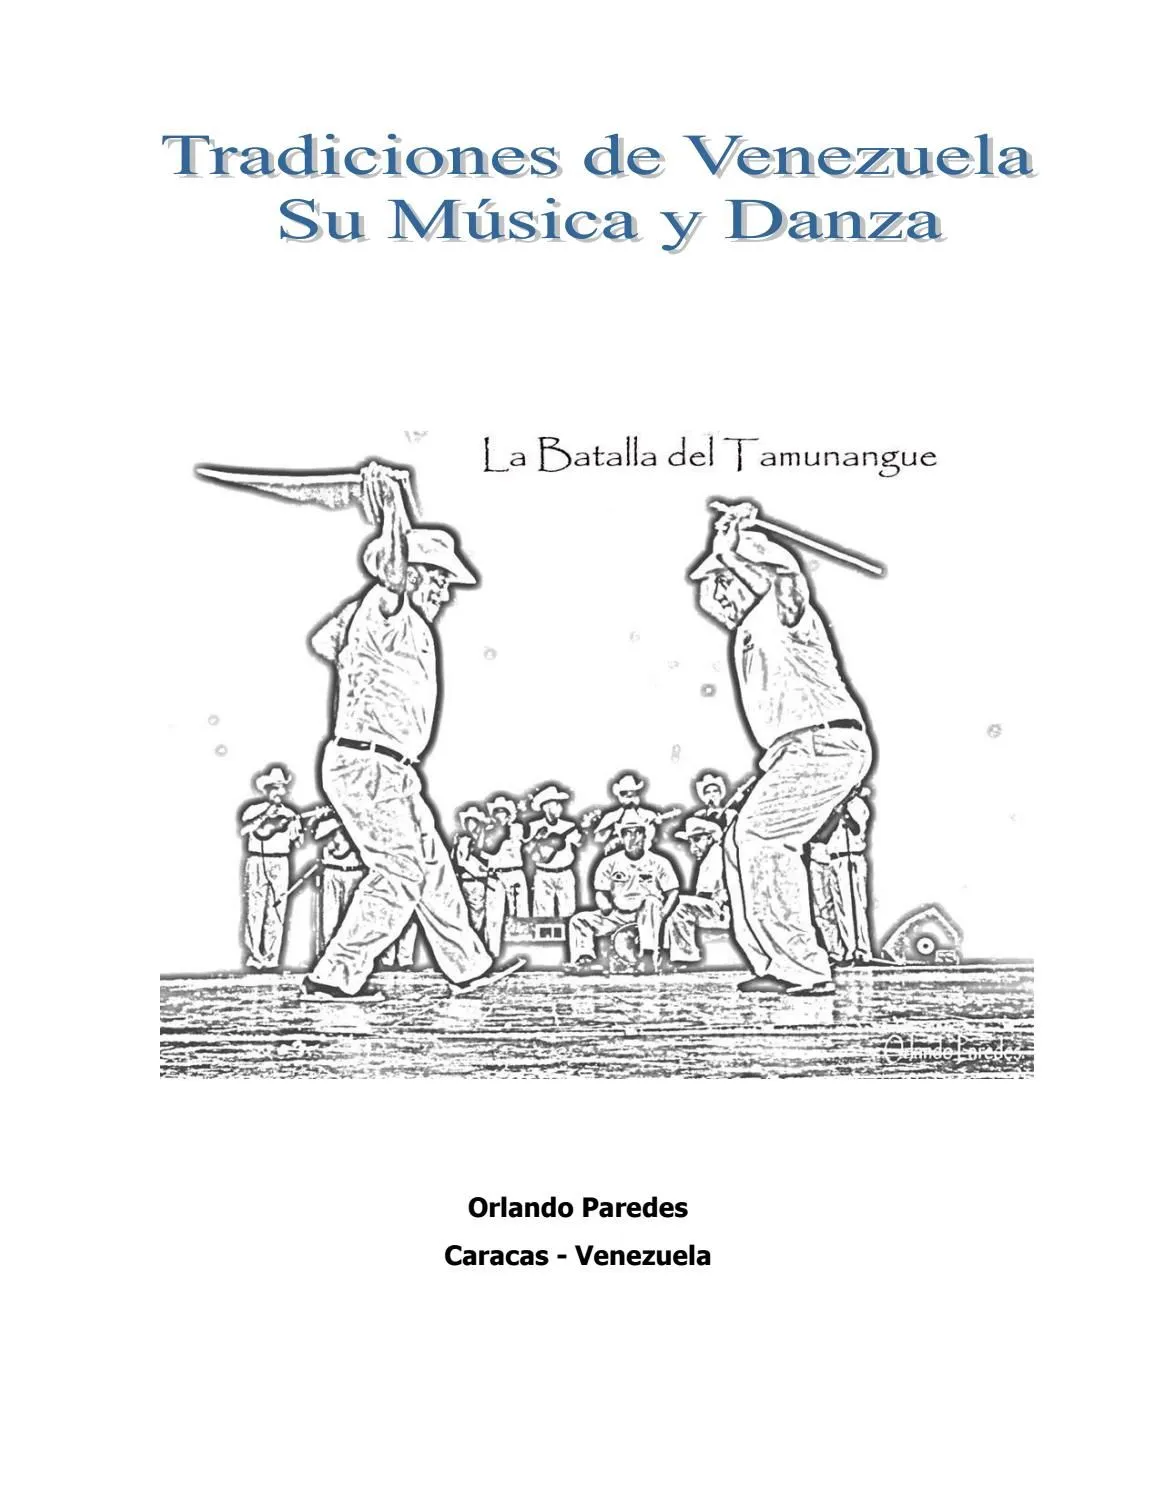 Tradiciones de Venezuela, su Música y Danza by Orlando Enrique Paredes  Cedeño - Issuu